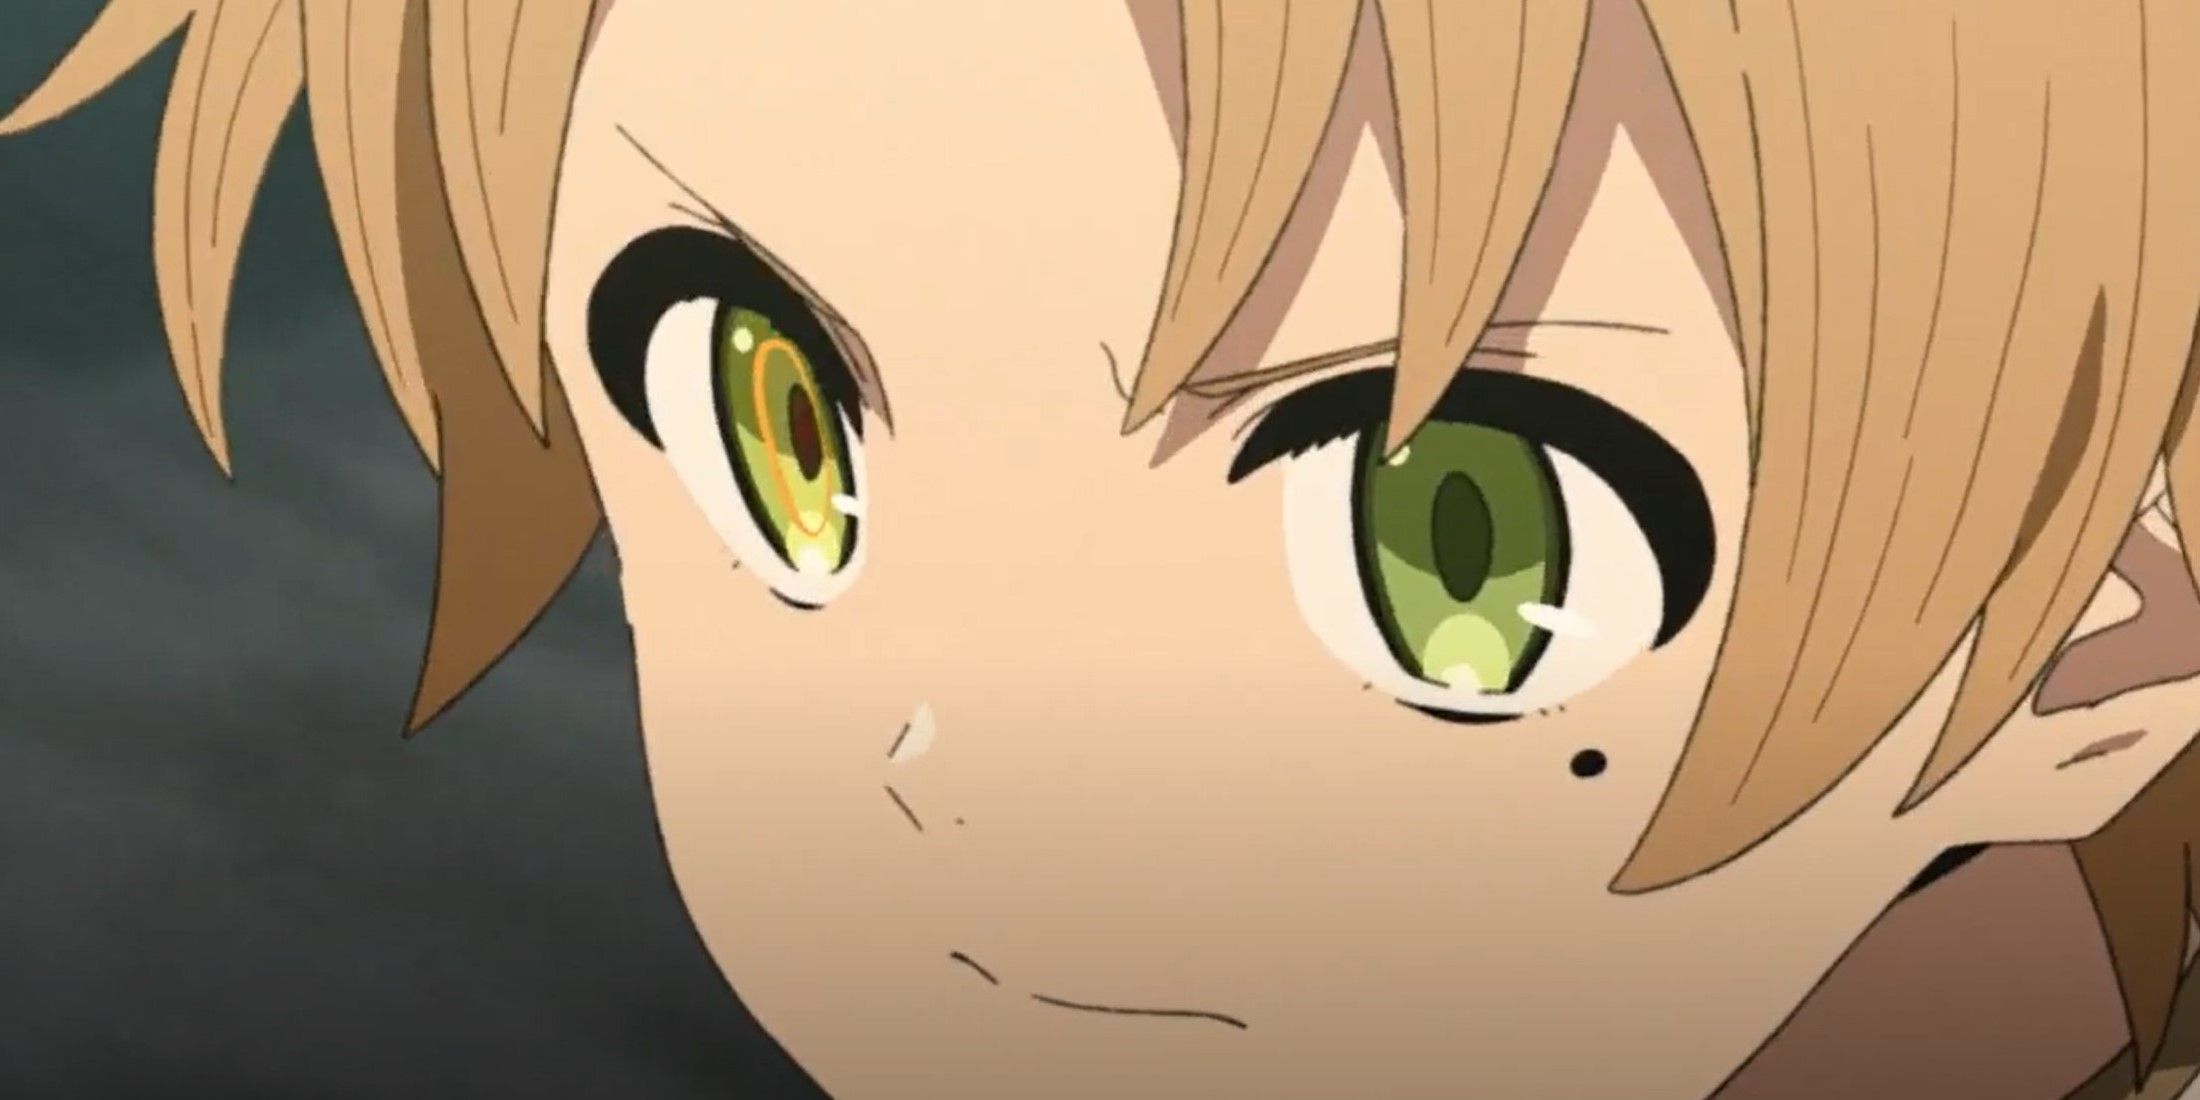 anime demon eyes